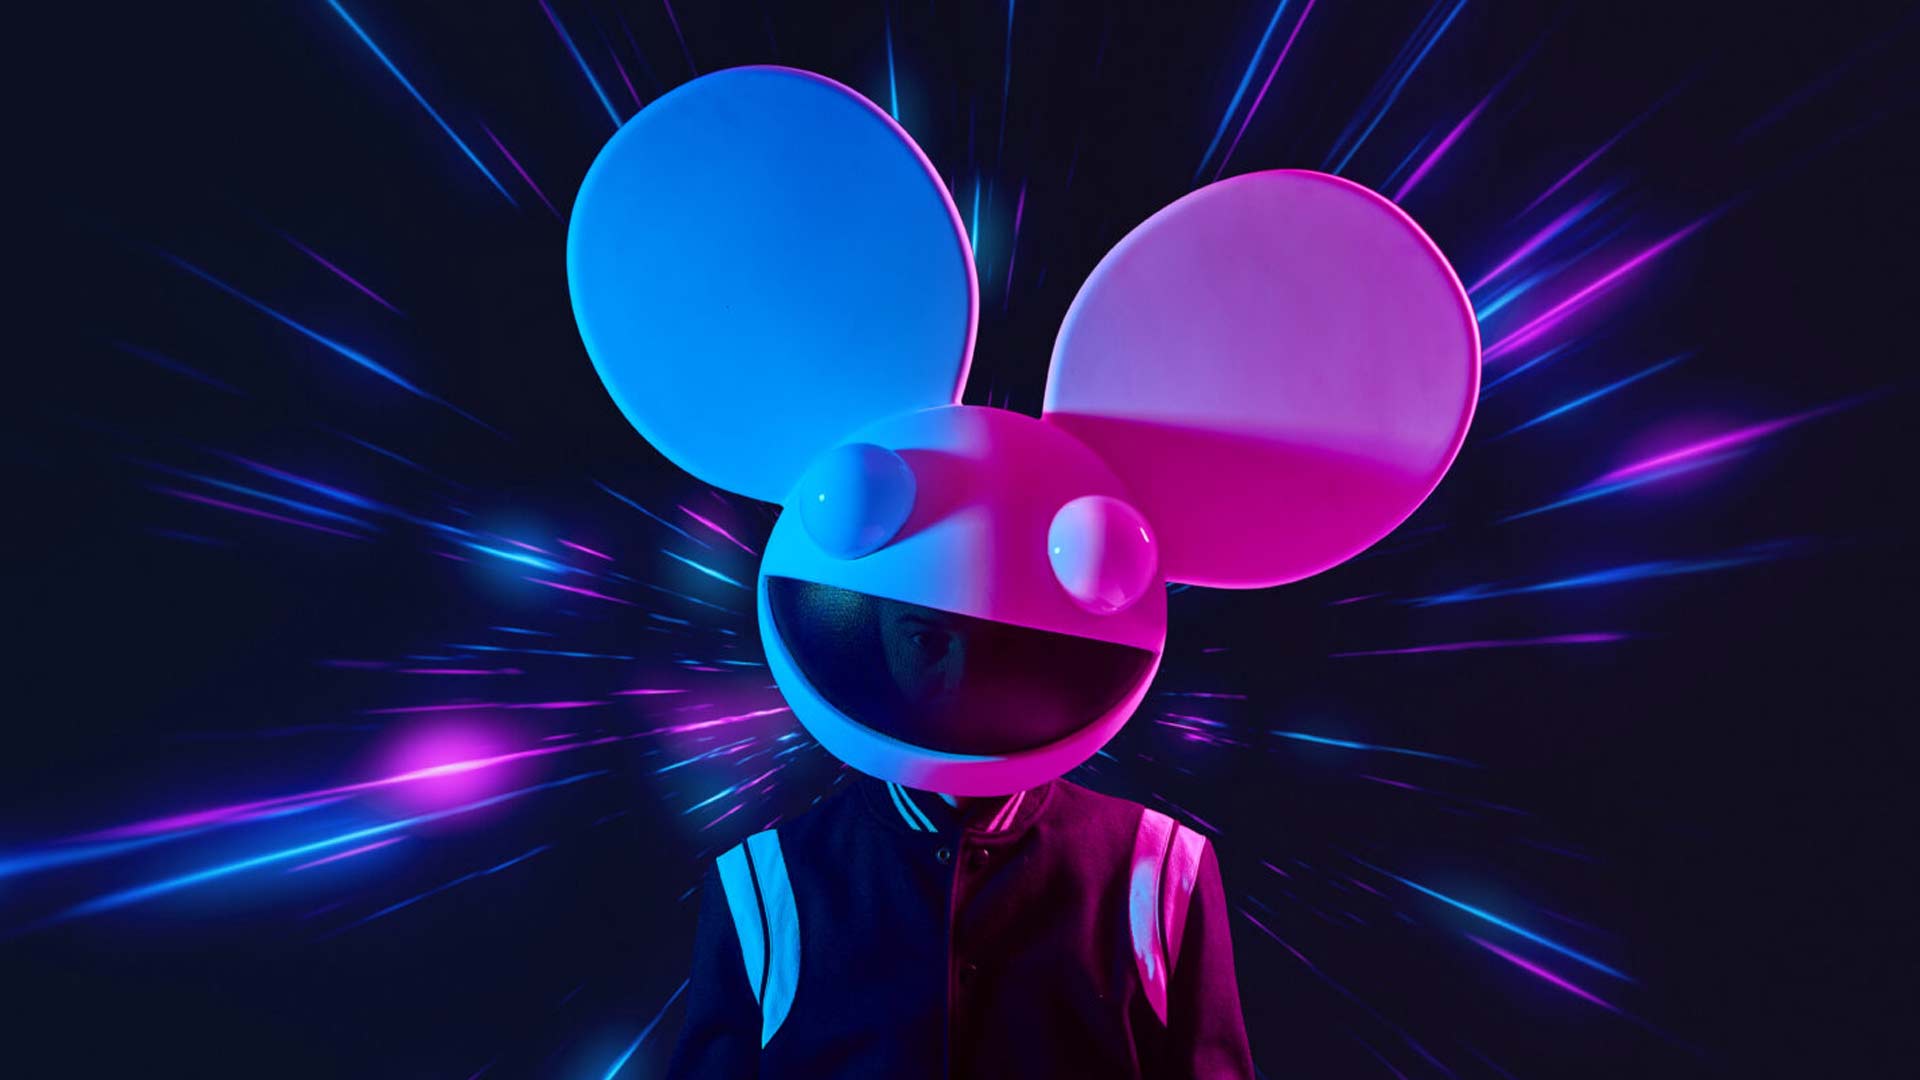 Deadmau5 Concert Experience Comes to VR Social Music Venue ‘Soundscape’